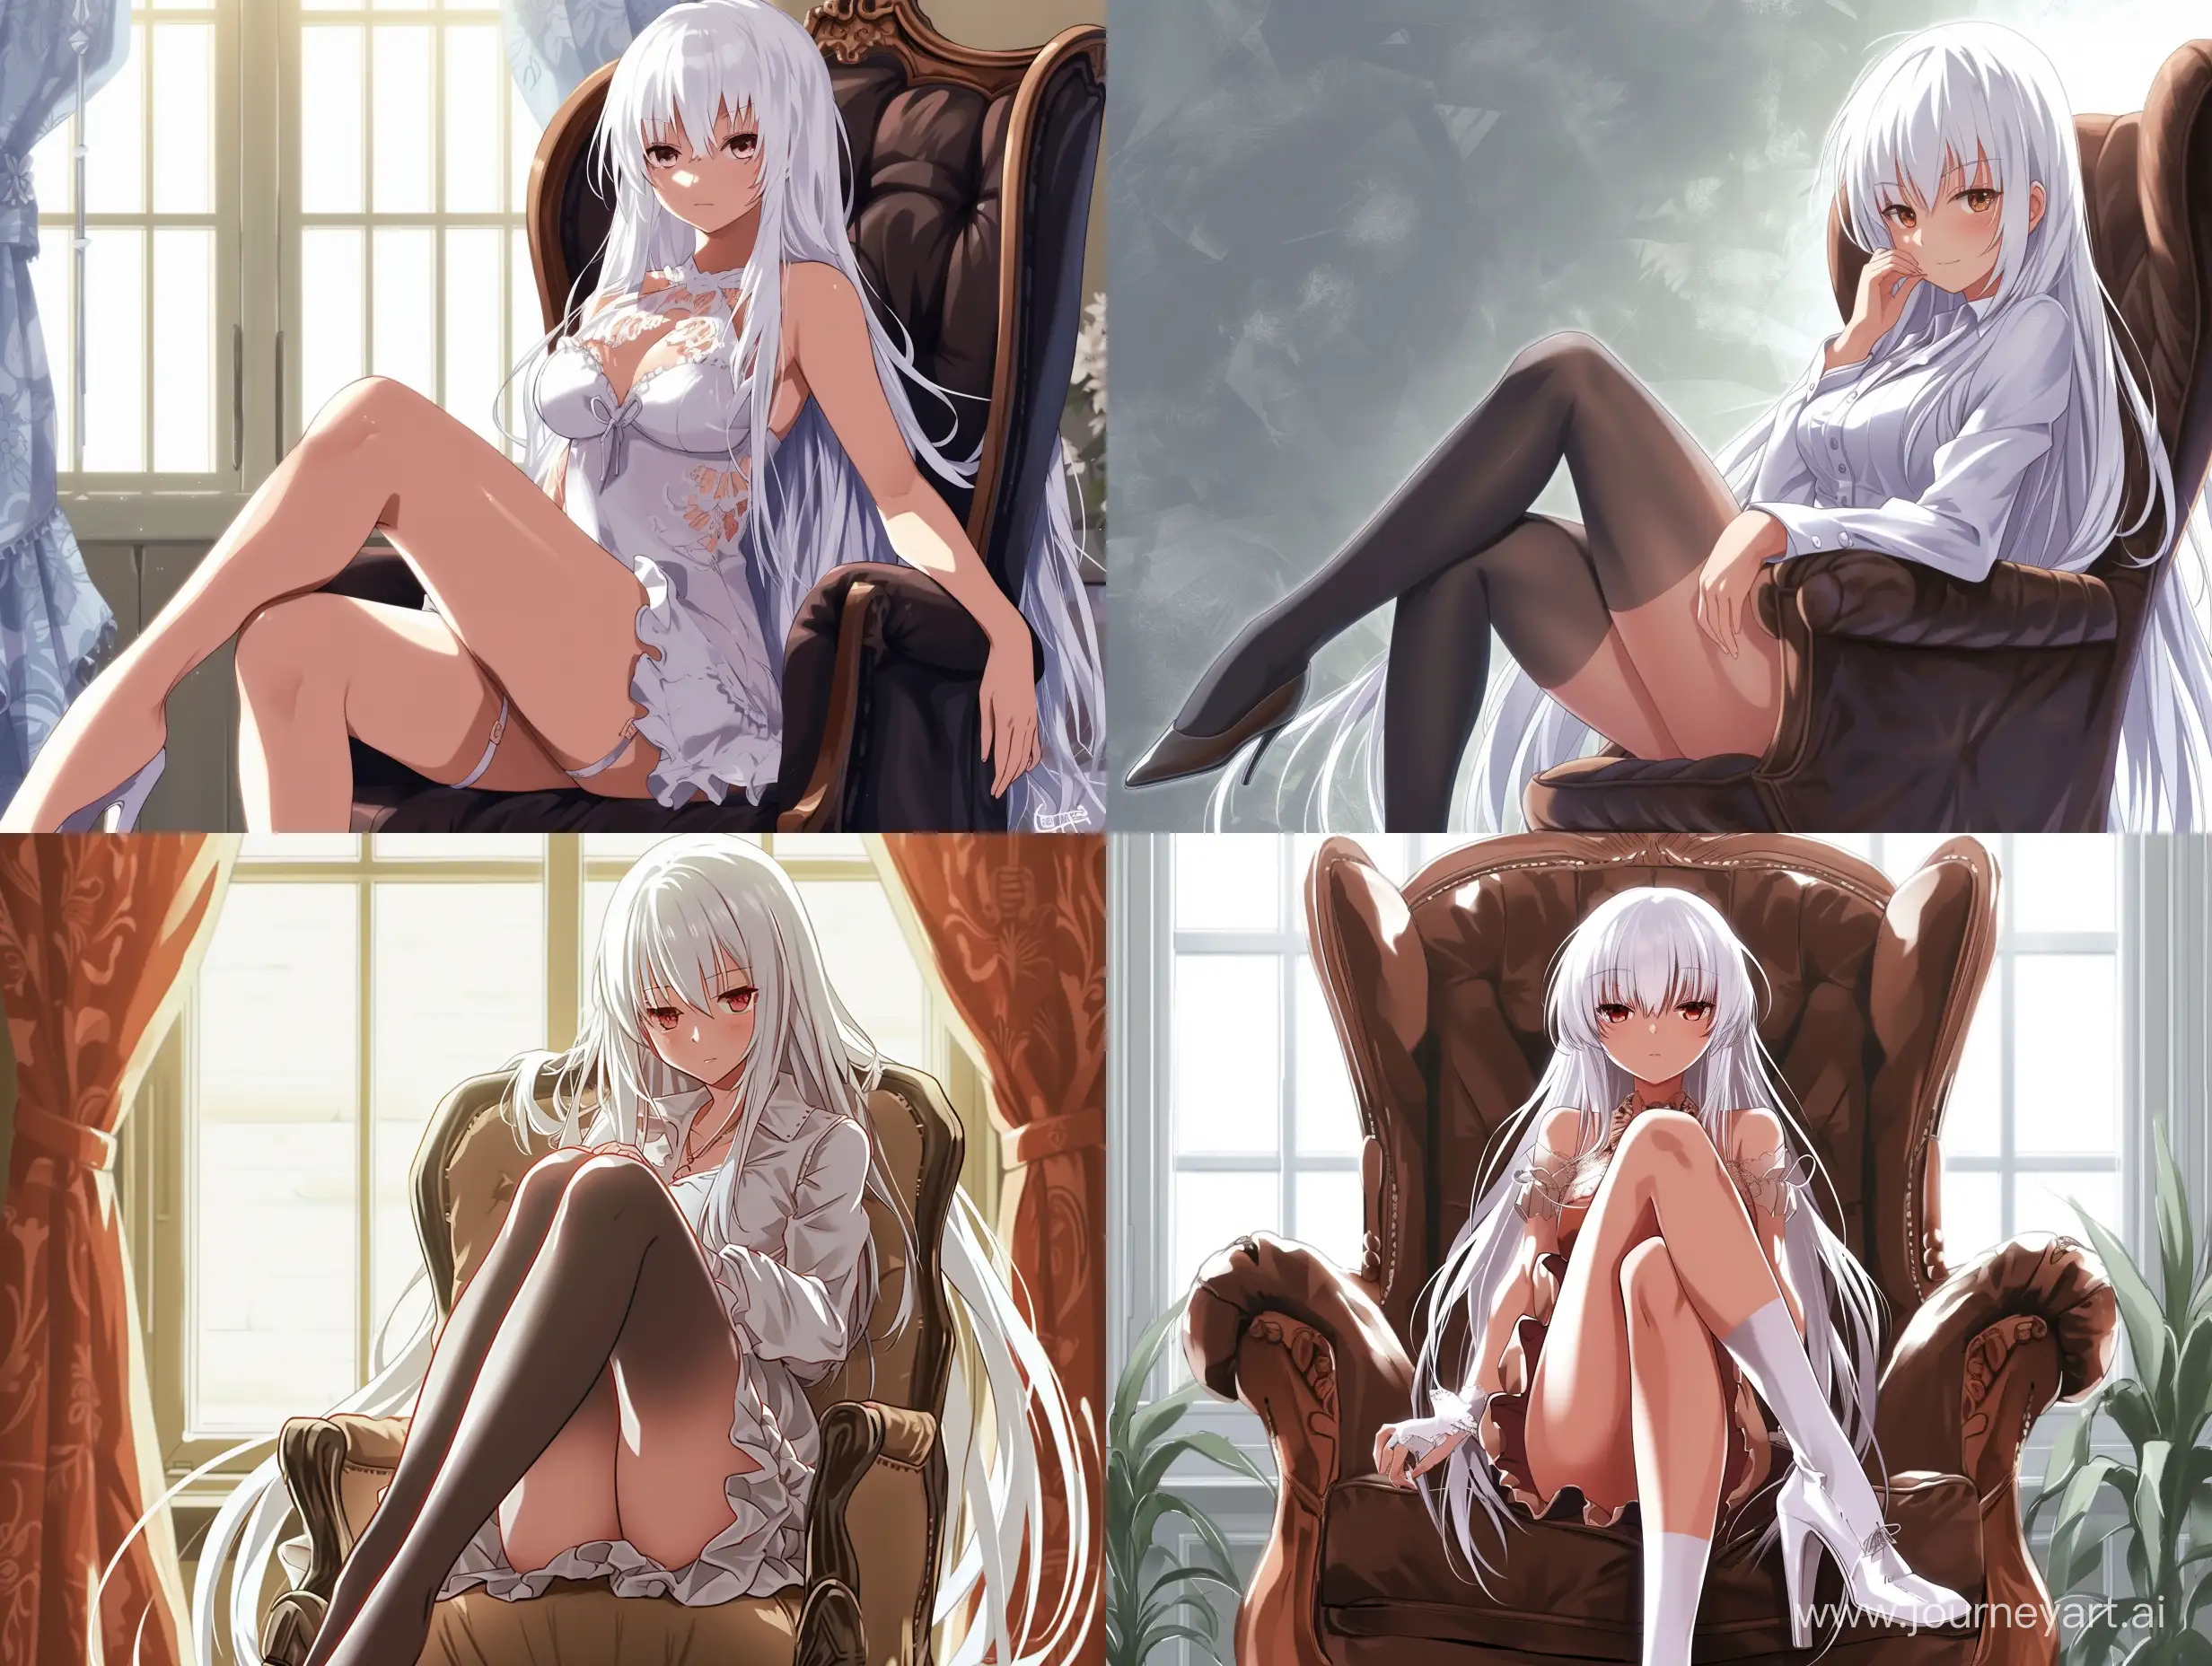 Девушка с длинными белыми волосами сидит в кресле, нога на ногу, аниме стиль